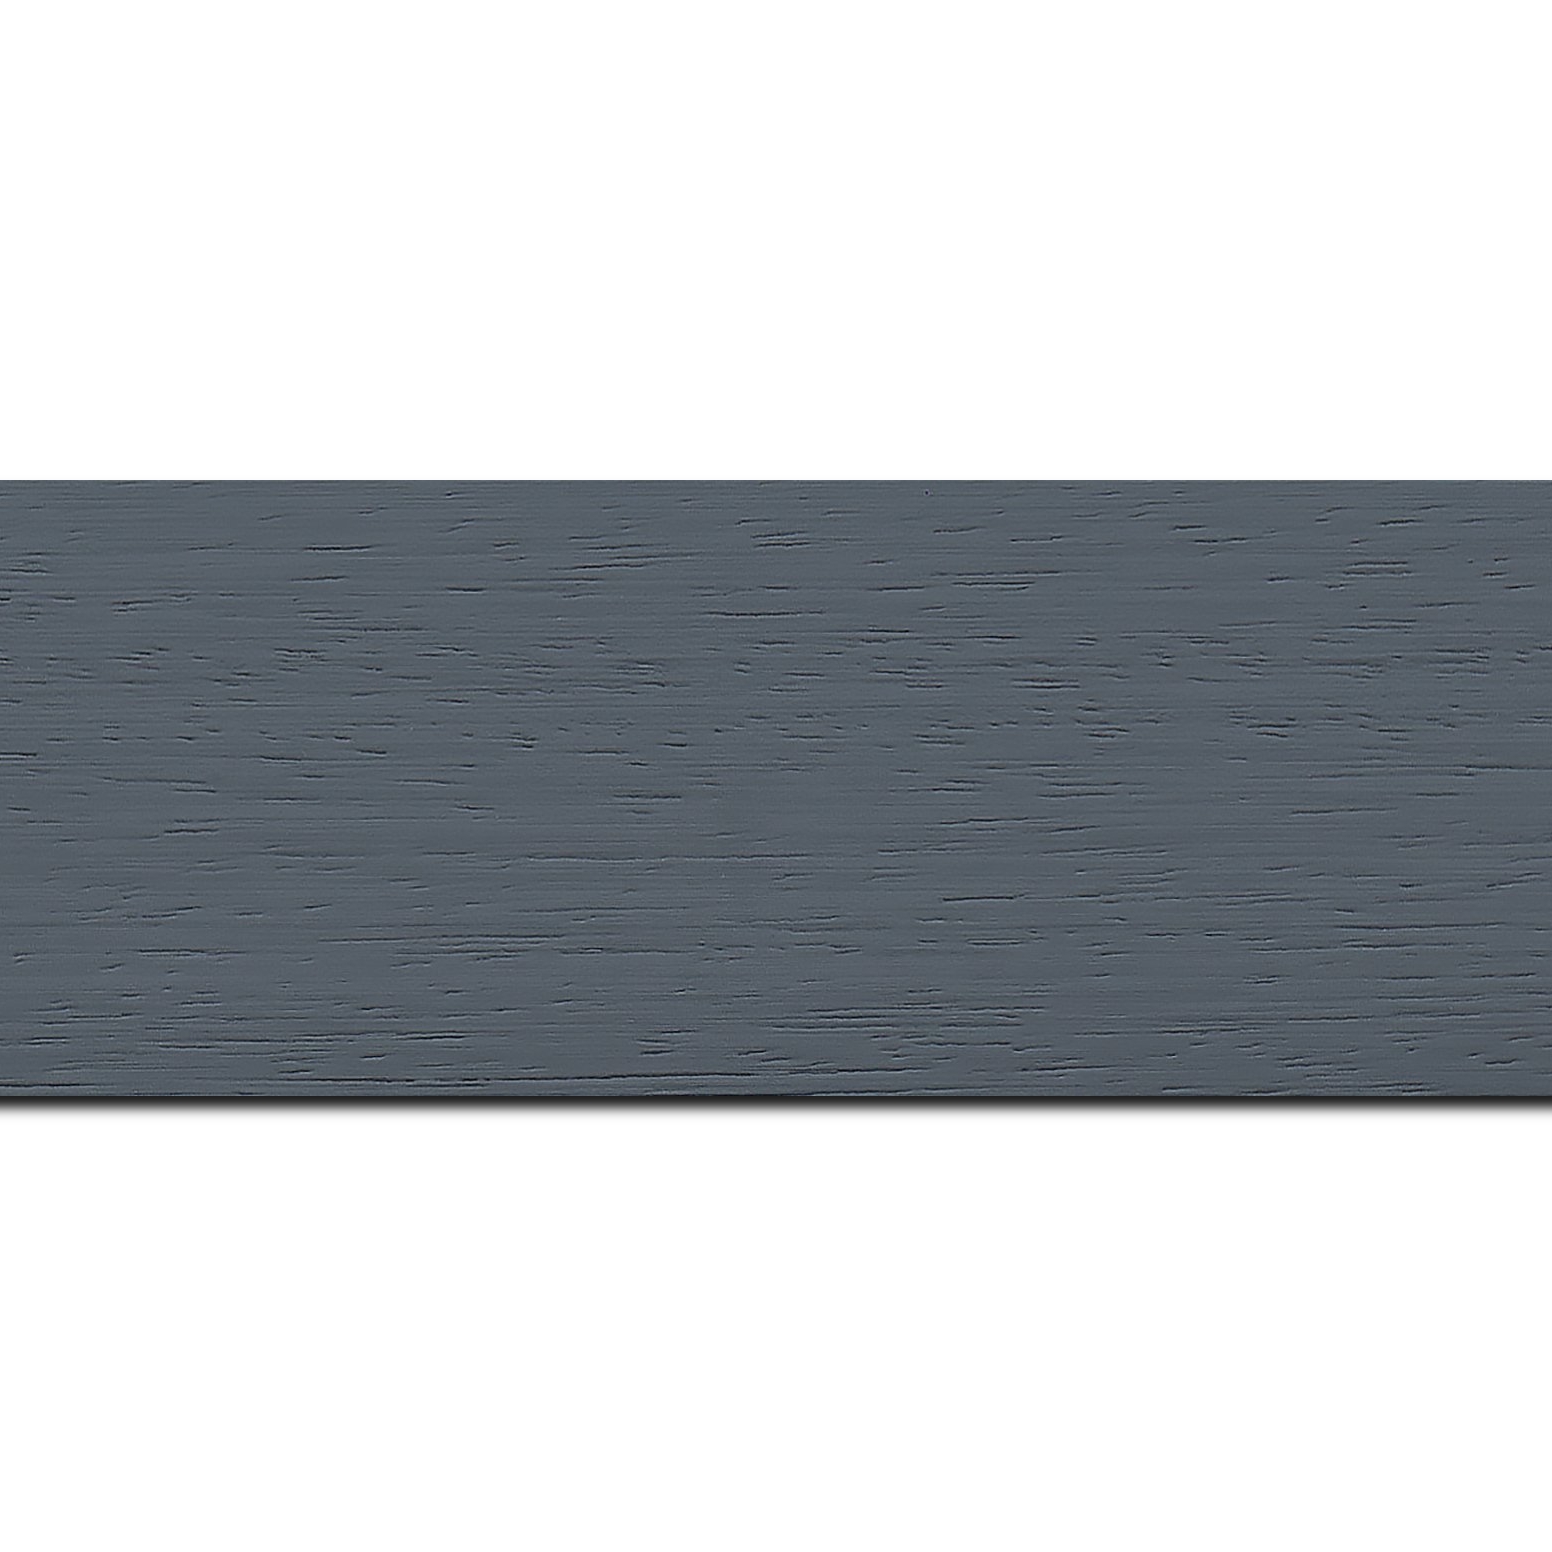 Pack par 12m, bois profil plat largeur 5.9cm couleur gris foncé satiné (longueur baguette pouvant varier entre 2.40m et 3m selon arrivage des bois)